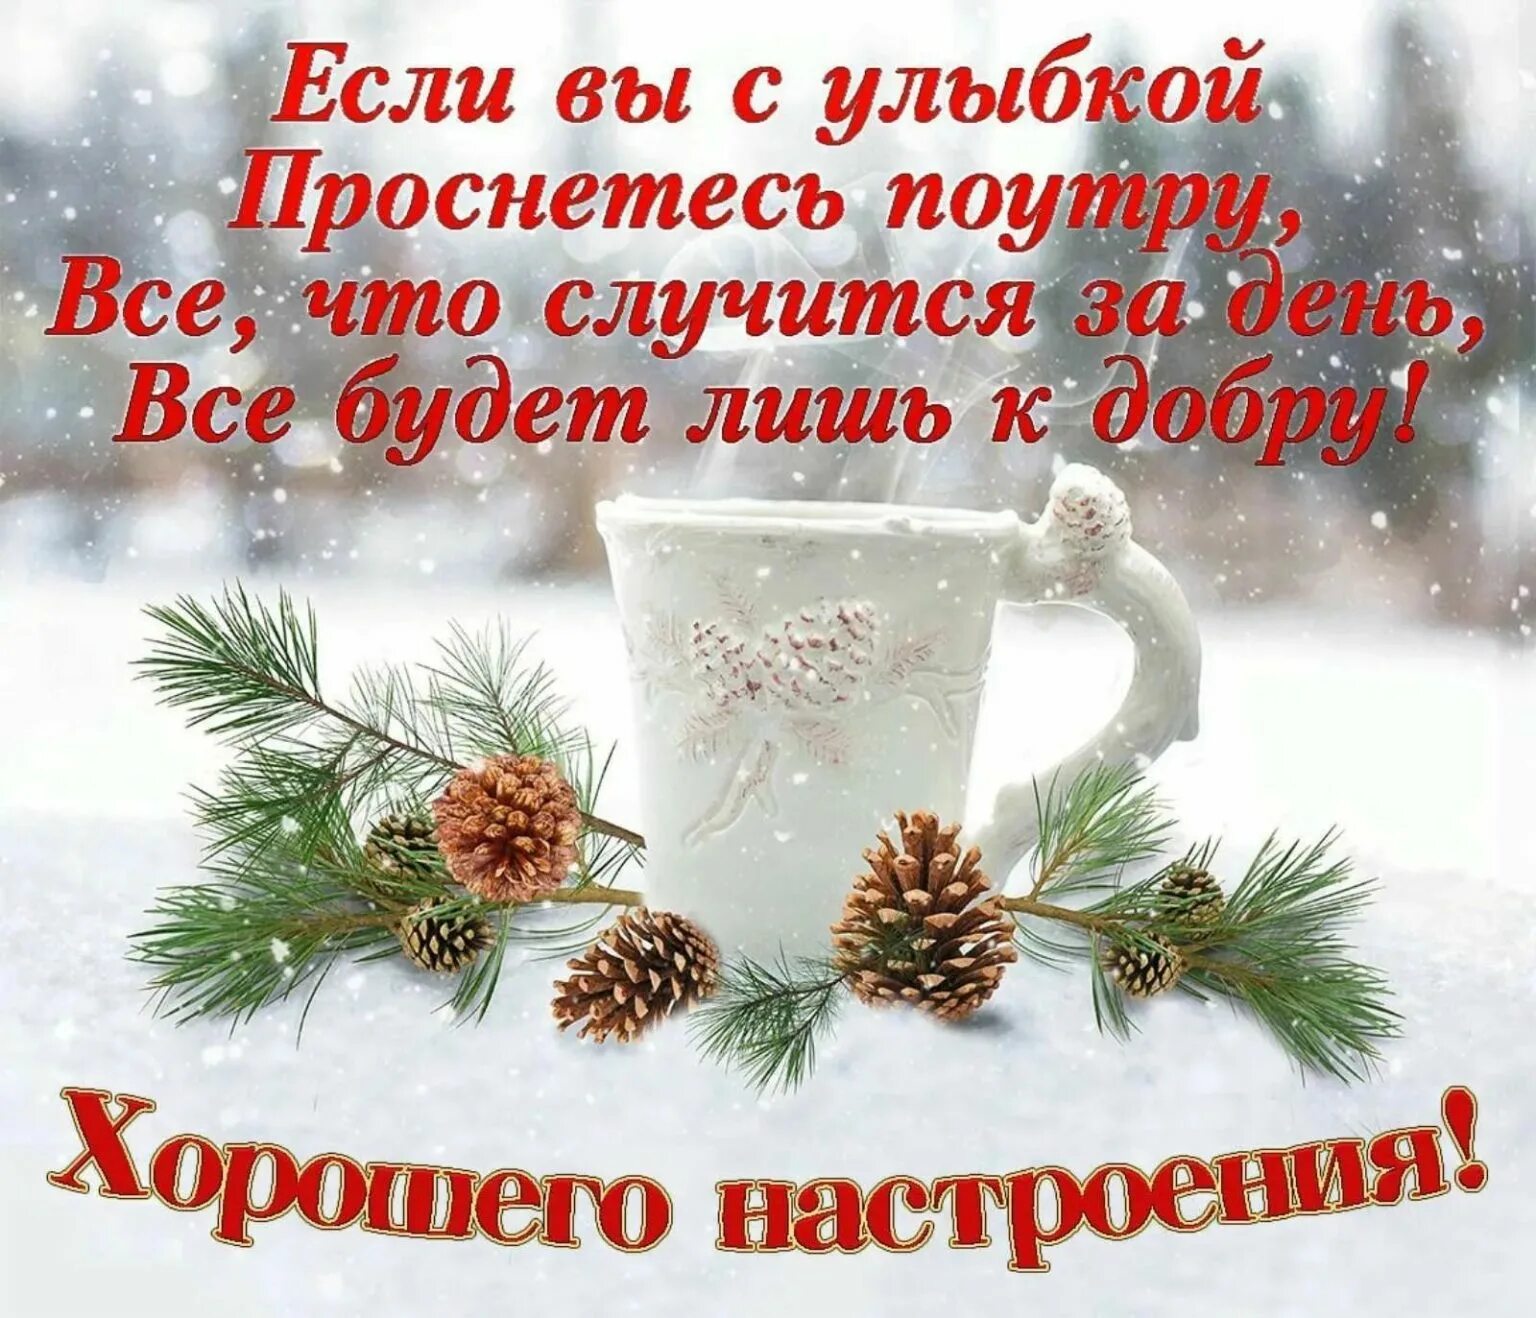 Зимние поздравления с добрым утром. Красивое поздравление с зимним утром. Доброго зимнего утра и хорошего дня. Пожелания доброго зимнего утра. Доброе утро хорошего дня бесплатные зимние